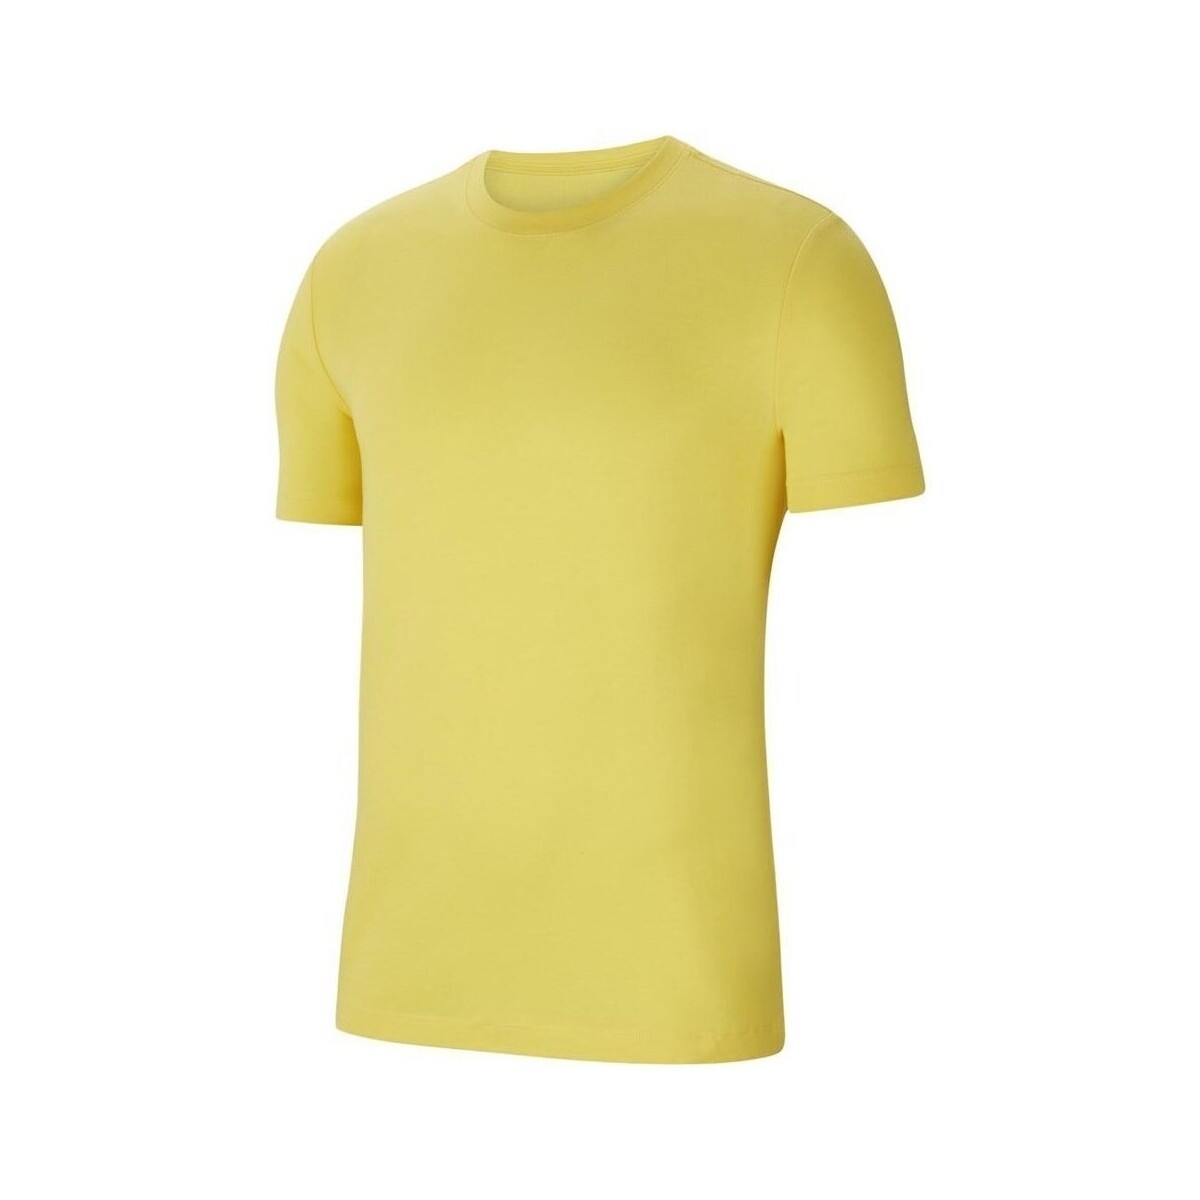 Vêtements Homme T-shirts manches courtes Nike Park 20 Tee Jaune